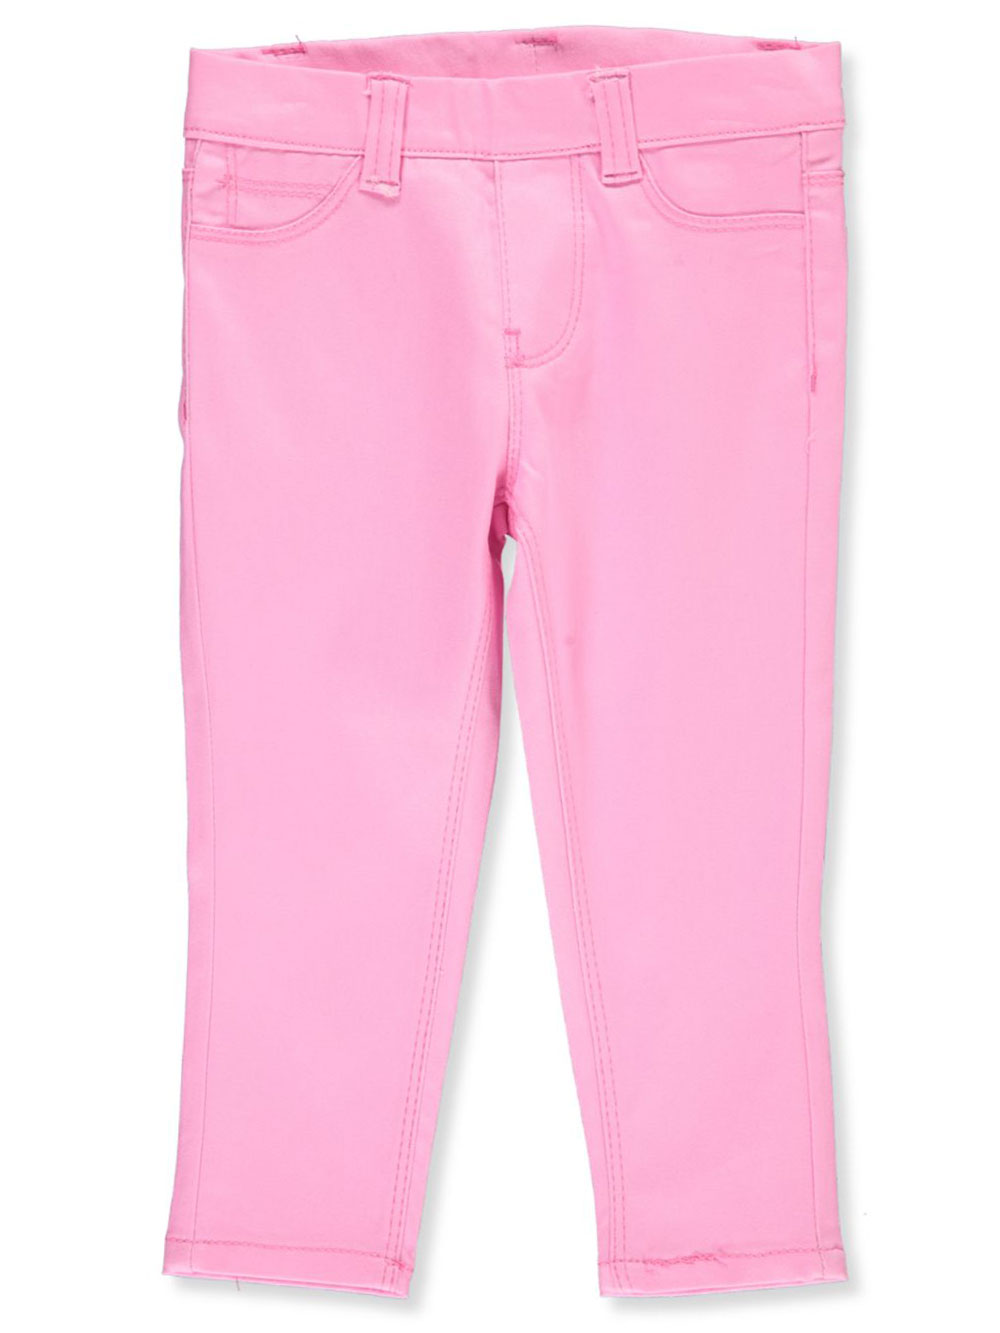 Girls Pink Pants